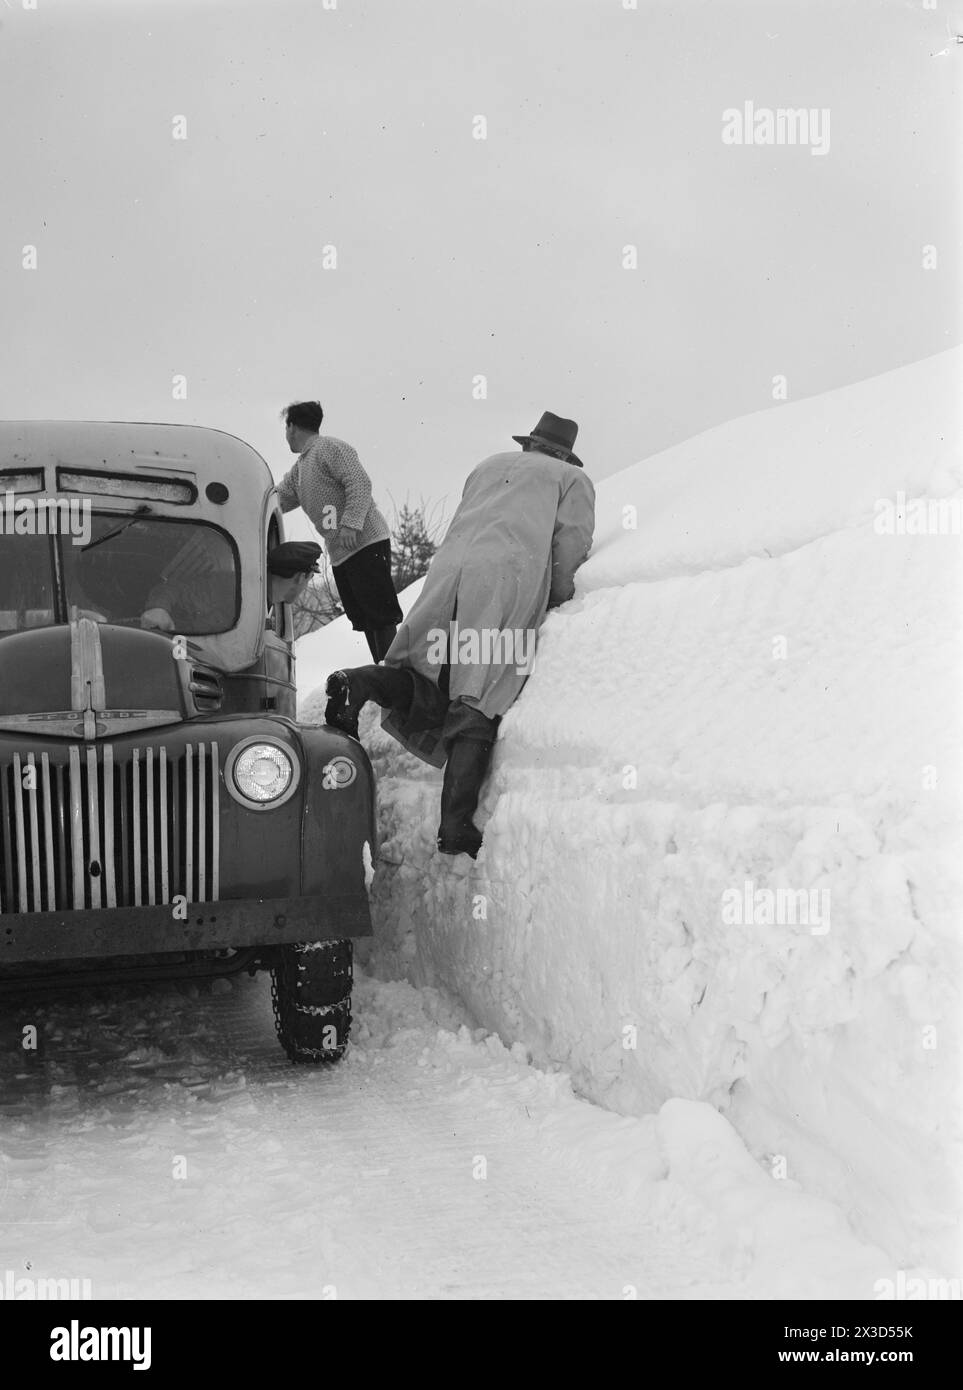 Aktuell 05–1951: Südnorwegen mit Schnee bedeckt. Vier bis fünf Meter hohe Pflugkanten entlang der Straßen, der Schnee ist so hoch, dass man leicht aus dem zweiten Stock gehen kann und die Leute ständig auf die Dächer klettern müssen, um den Schnee von dort weg zu räumen. Fußgänger, die den Bus vor den Treffpunkten treffen, haben nichts zu tun, als mühsam an den Pflugrändern vorbei zu klettern, um sich selbst zu retten.Foto: Arne Kjus / aktuell / NTB ***Foto ist nicht bildbearbeitet*** dieser Bildtext wird automatisch übersetzt Stockfoto